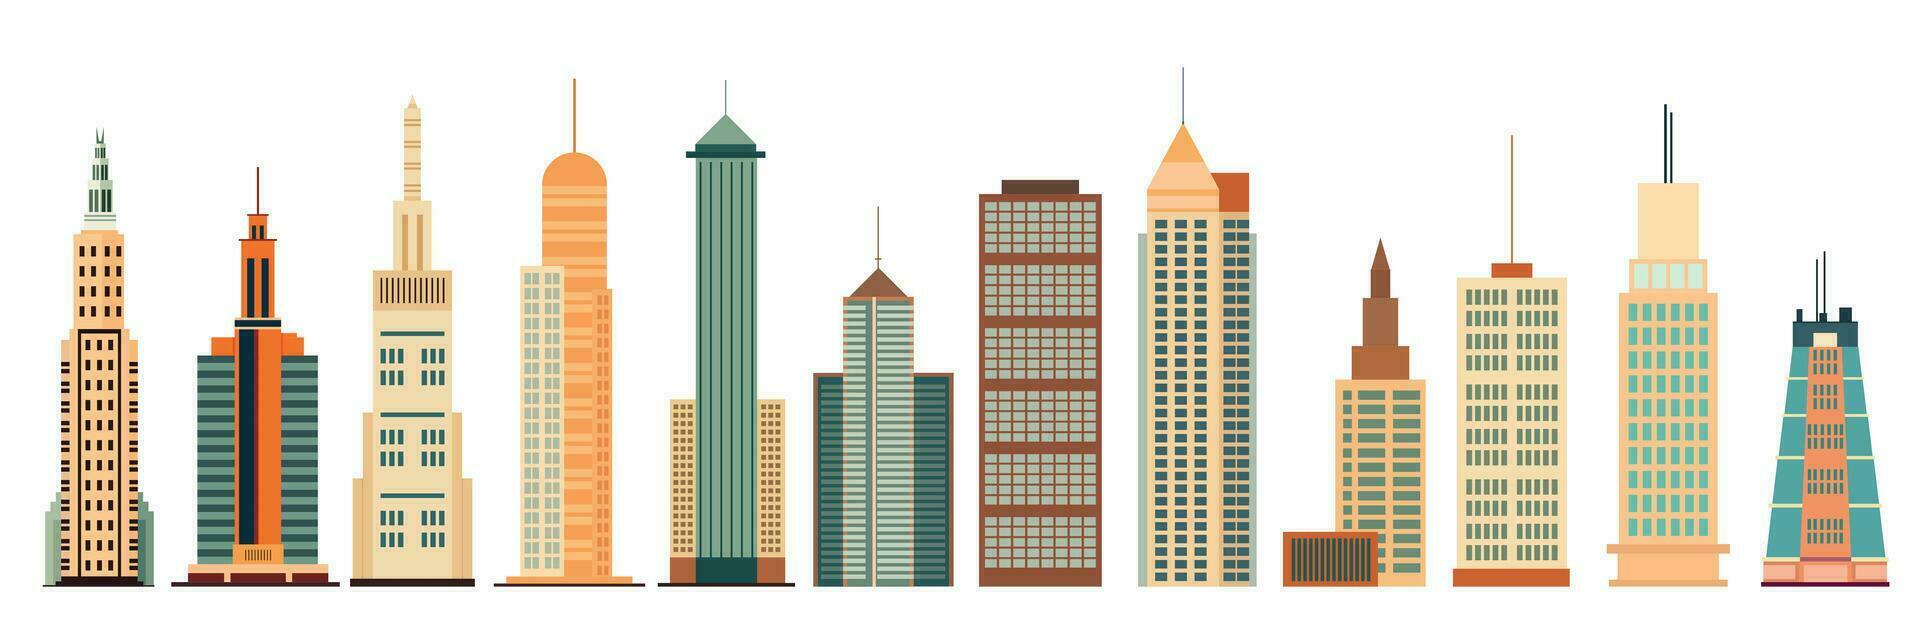 uppsättning av skyskrapor i platt stil. skyskrapa isolerat på vit bakgrund. vektor illustration